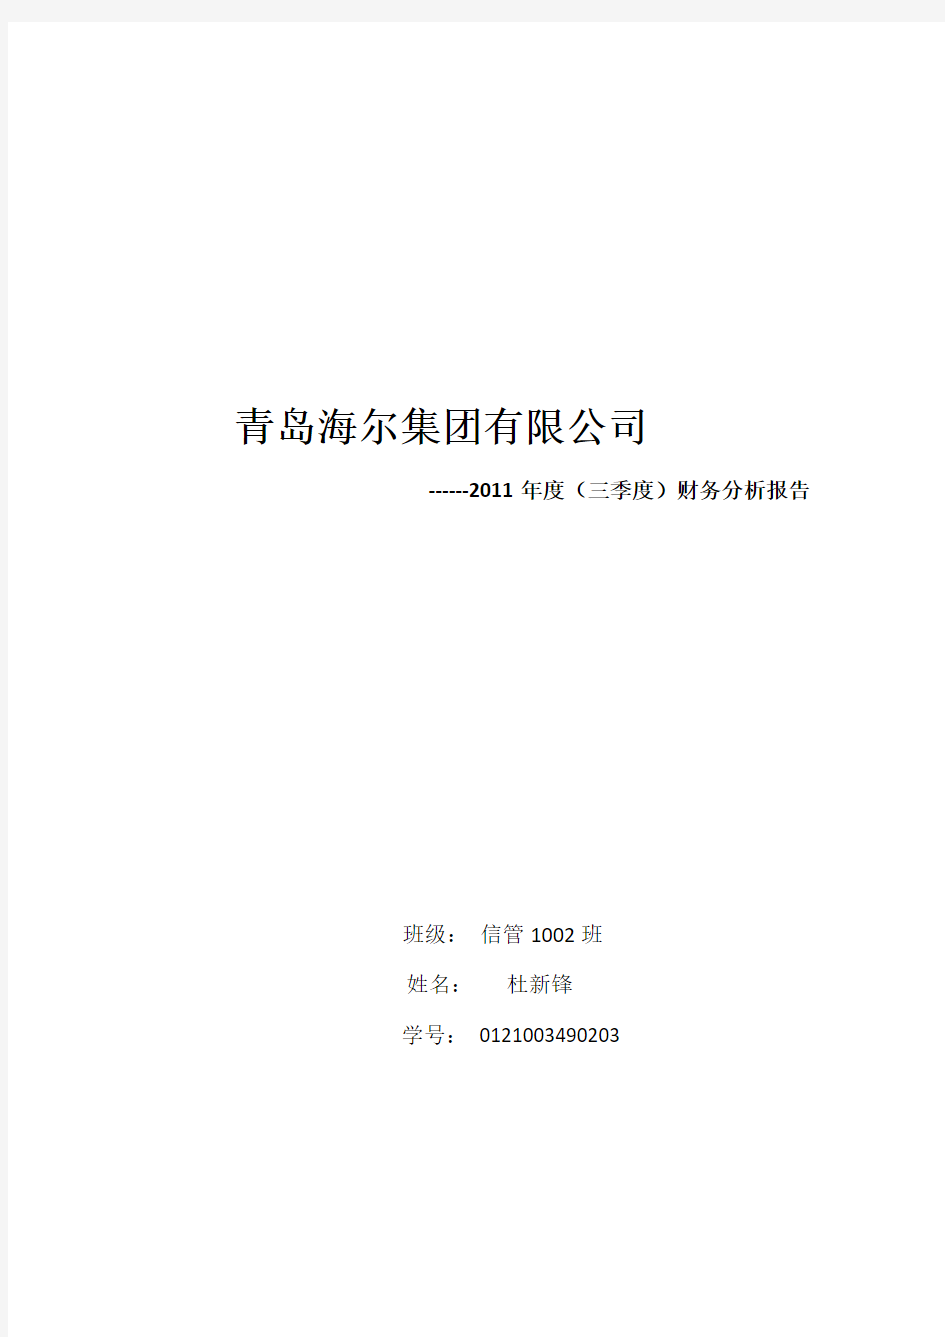 青岛海尔集团有限公司2011年度财务分析报告